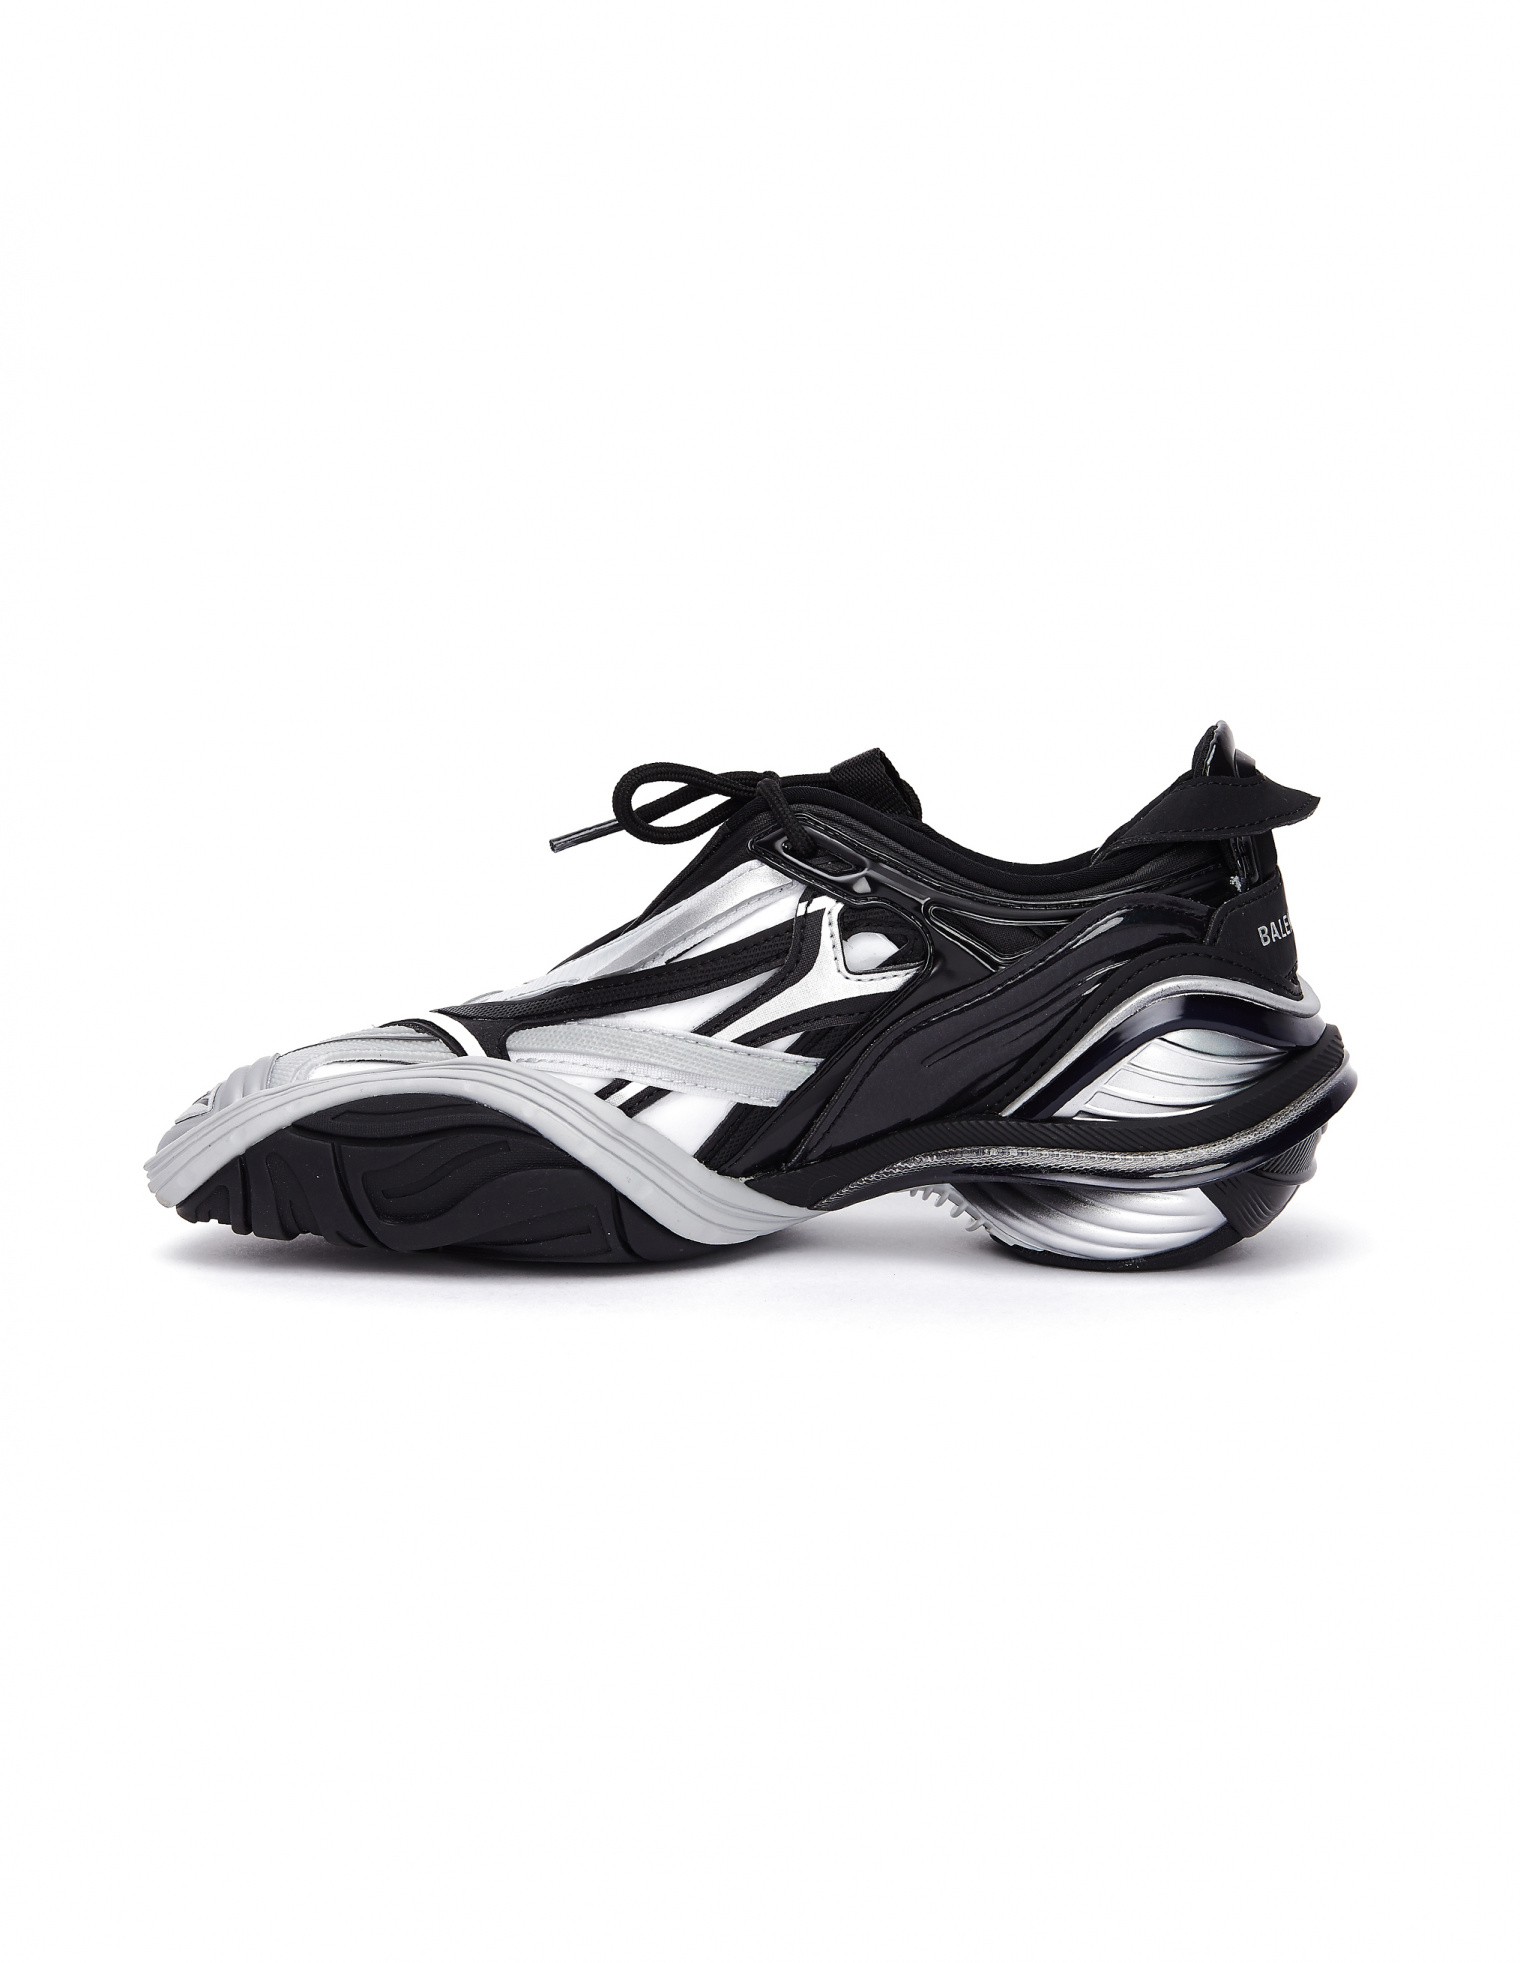 Balenciaga Black & White Tyrex Sneakers